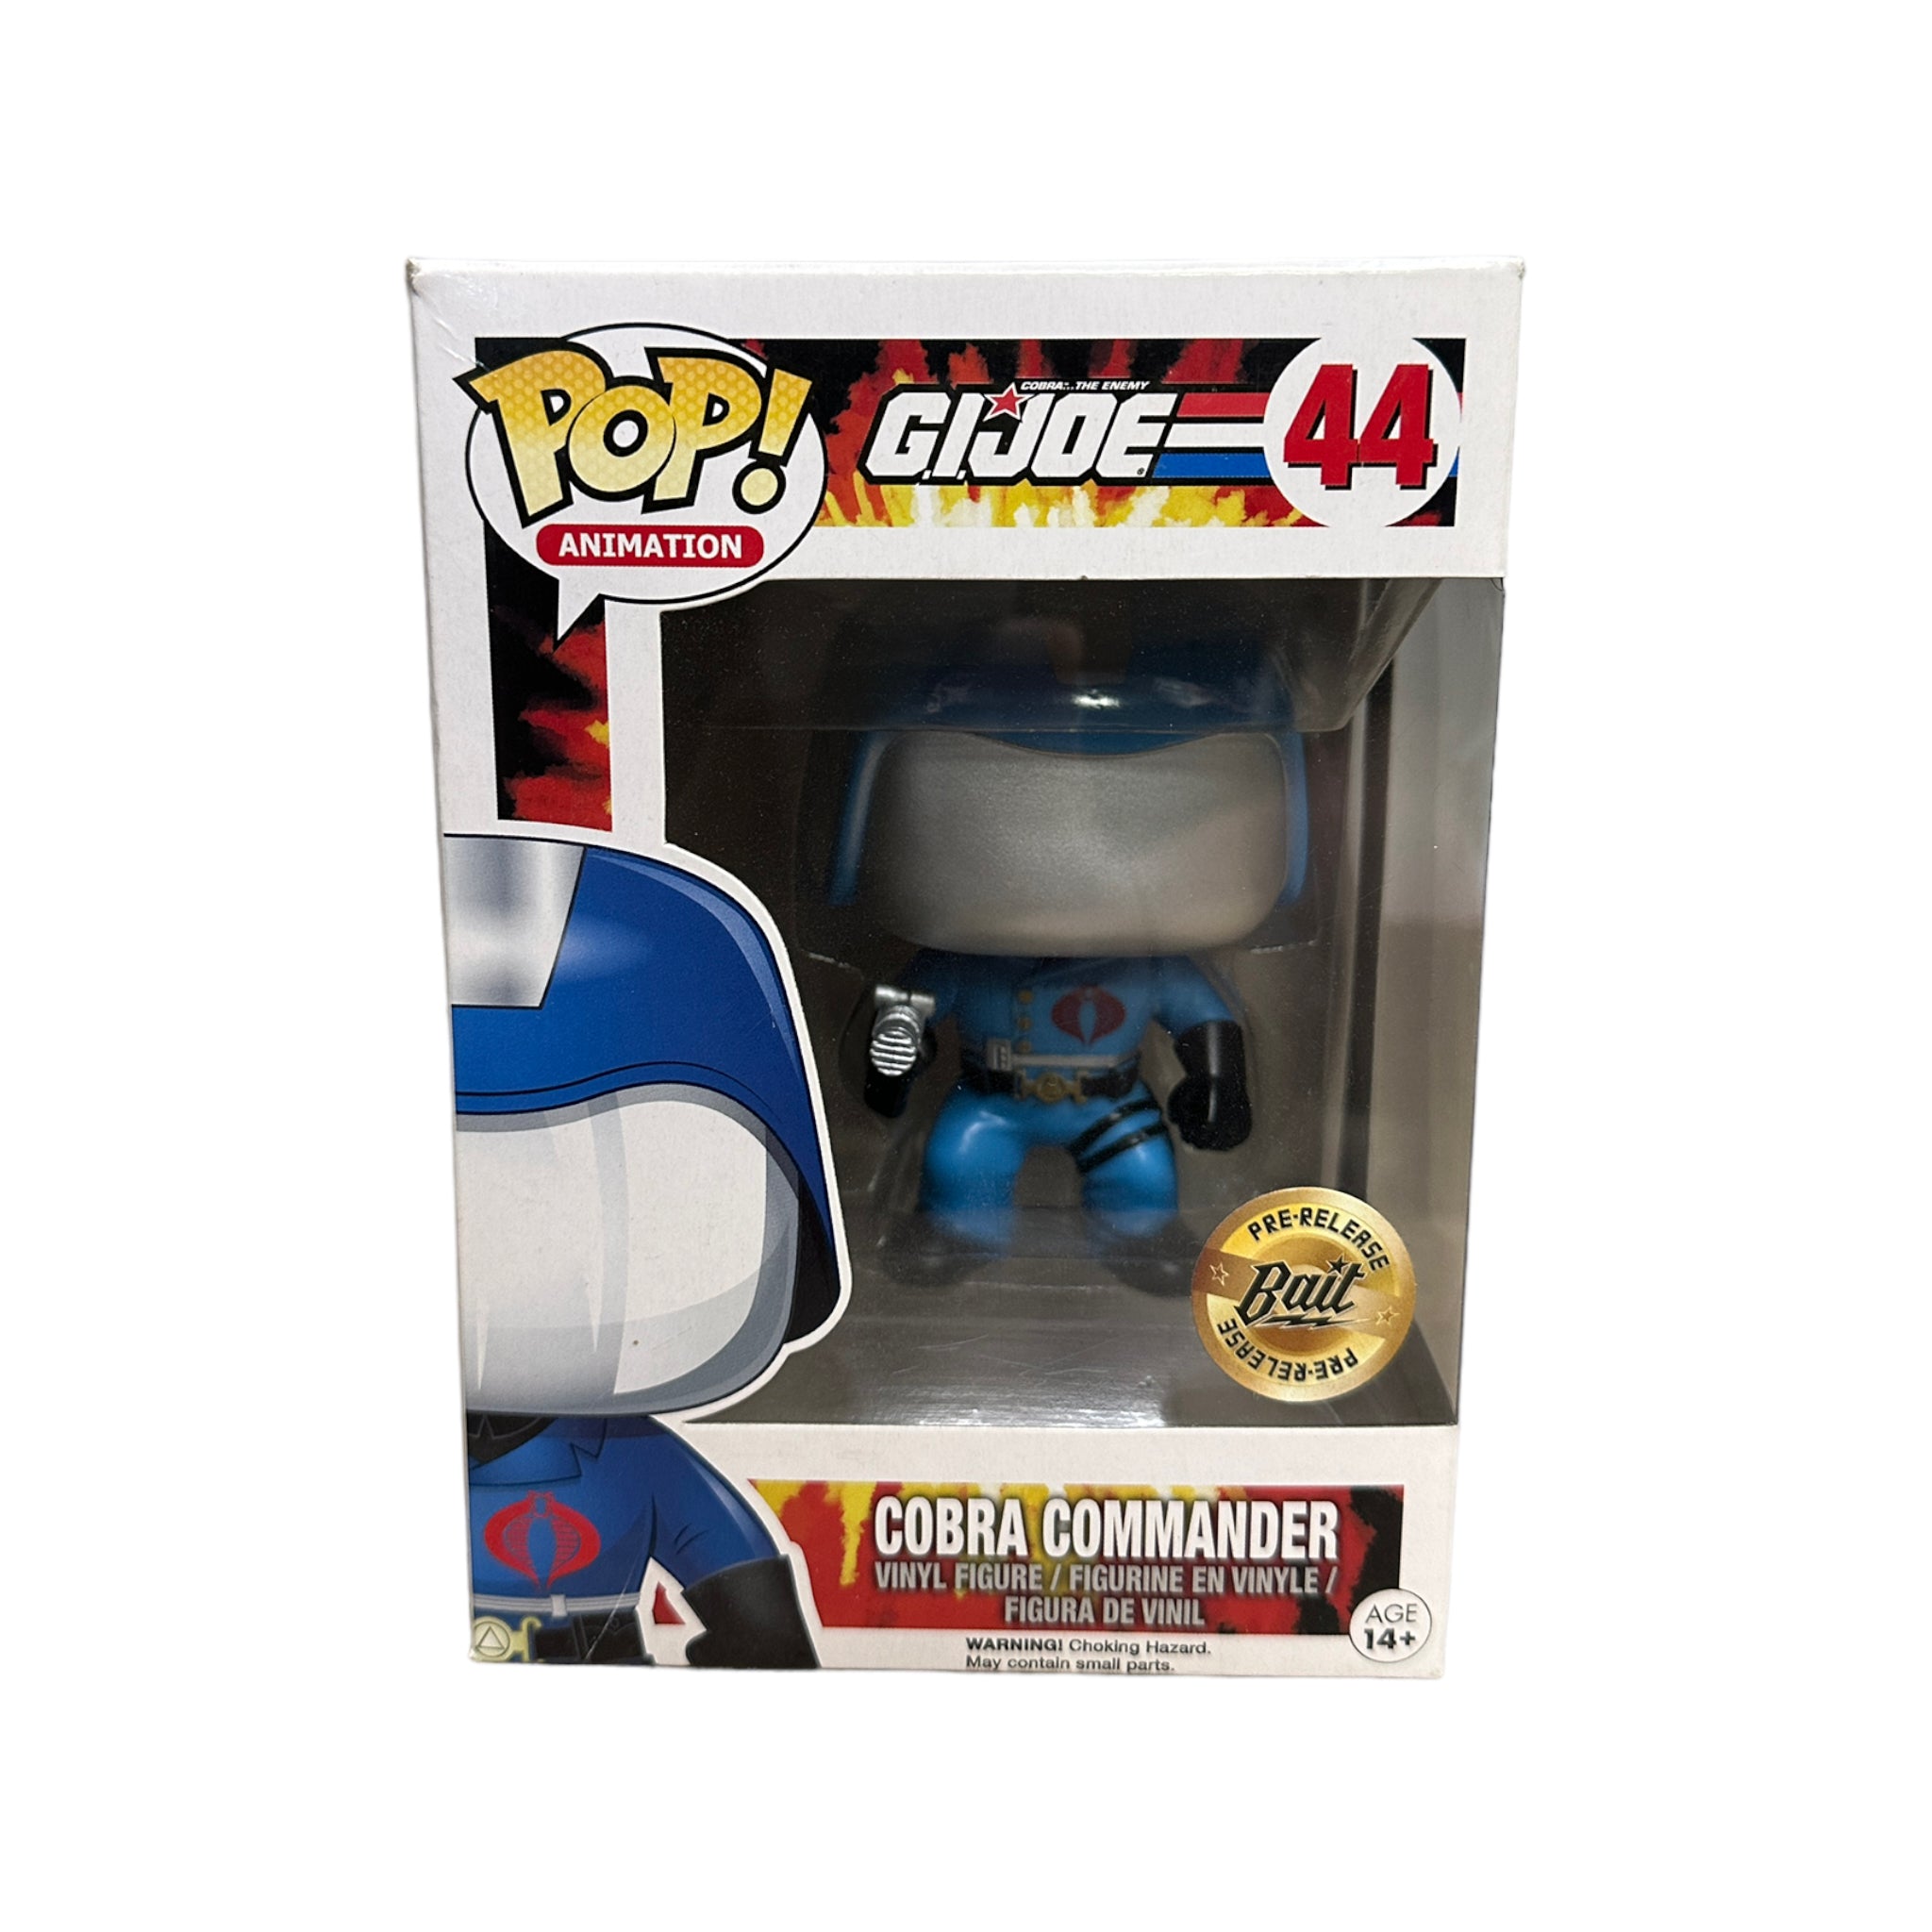 Cobra Commander #44 Funko Pop! - G.I. Joe - BAIT Pre-Release Exclusive - Condition 7.5/10